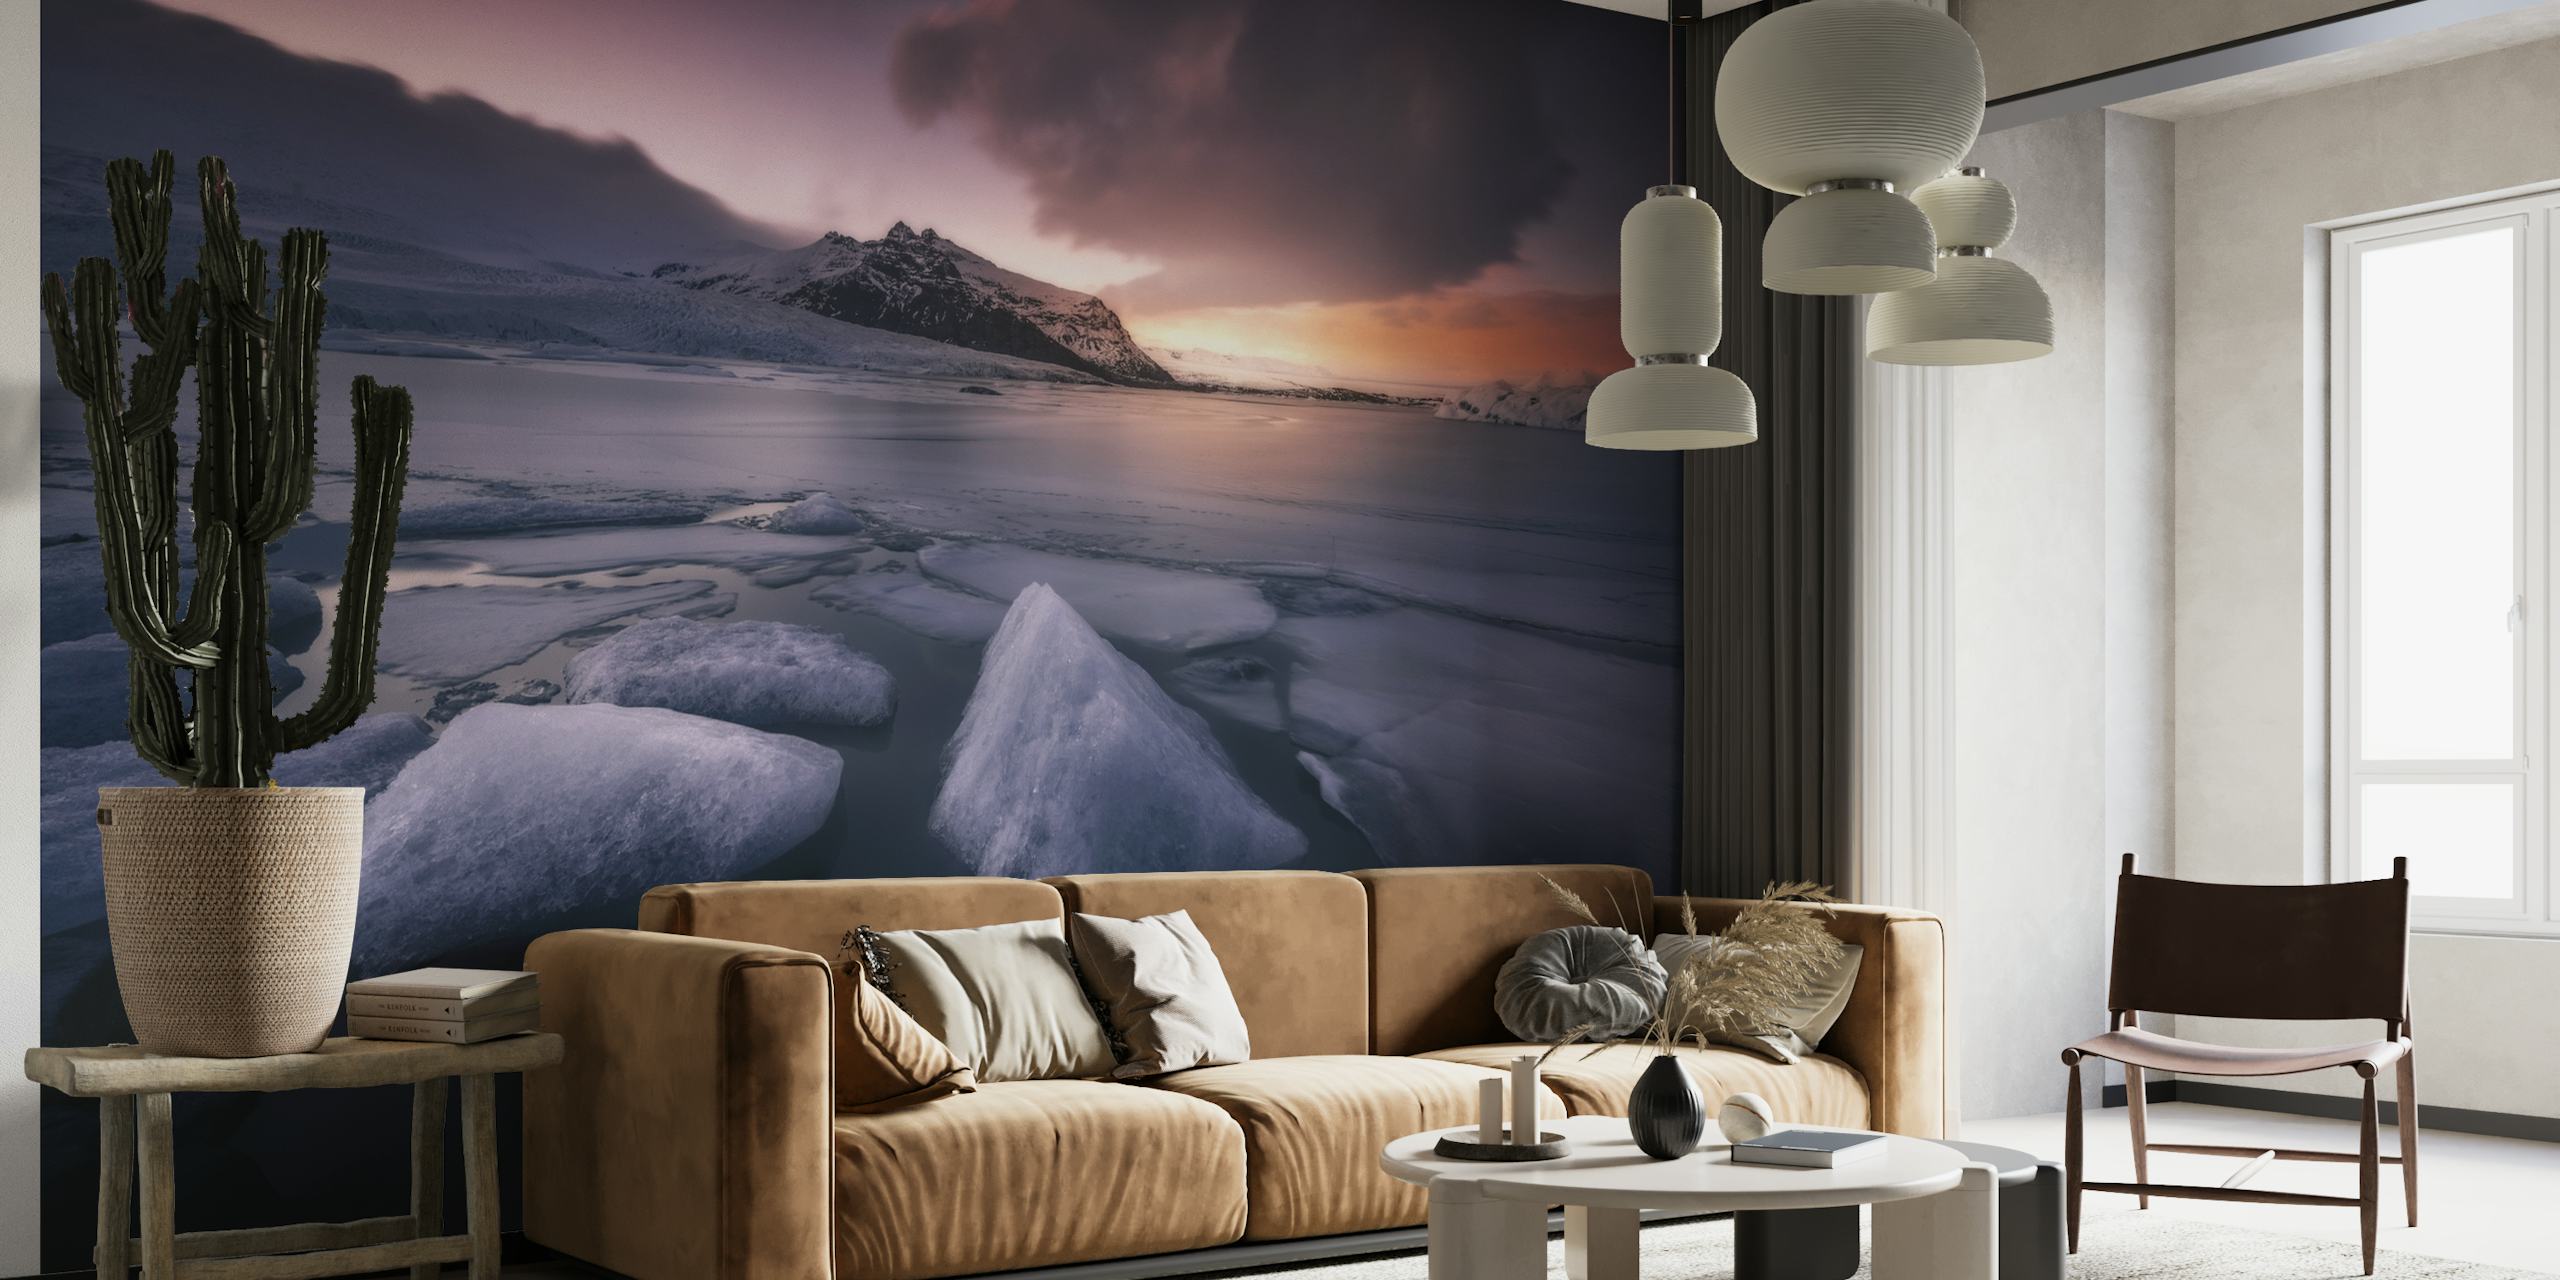 Une fresque murale représentant les dernières lumières du lagon de Fjallsarlon avec des formations de glace et un coucher de soleil sur les montagnes.